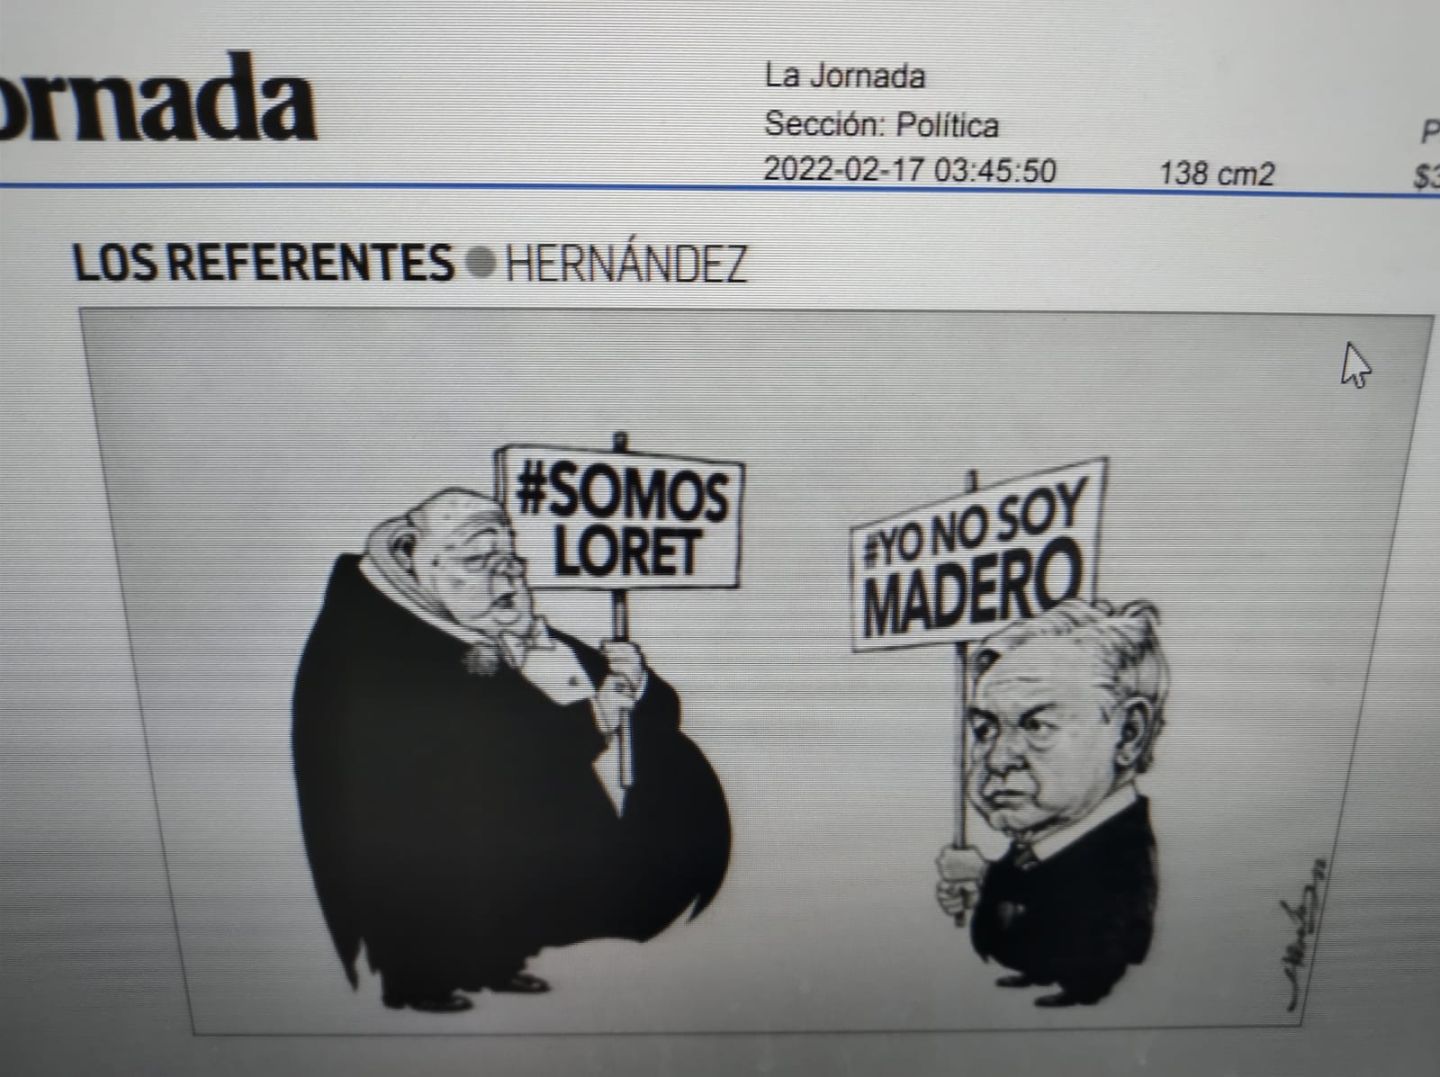 #El cartón de La Jornada publicado hoy